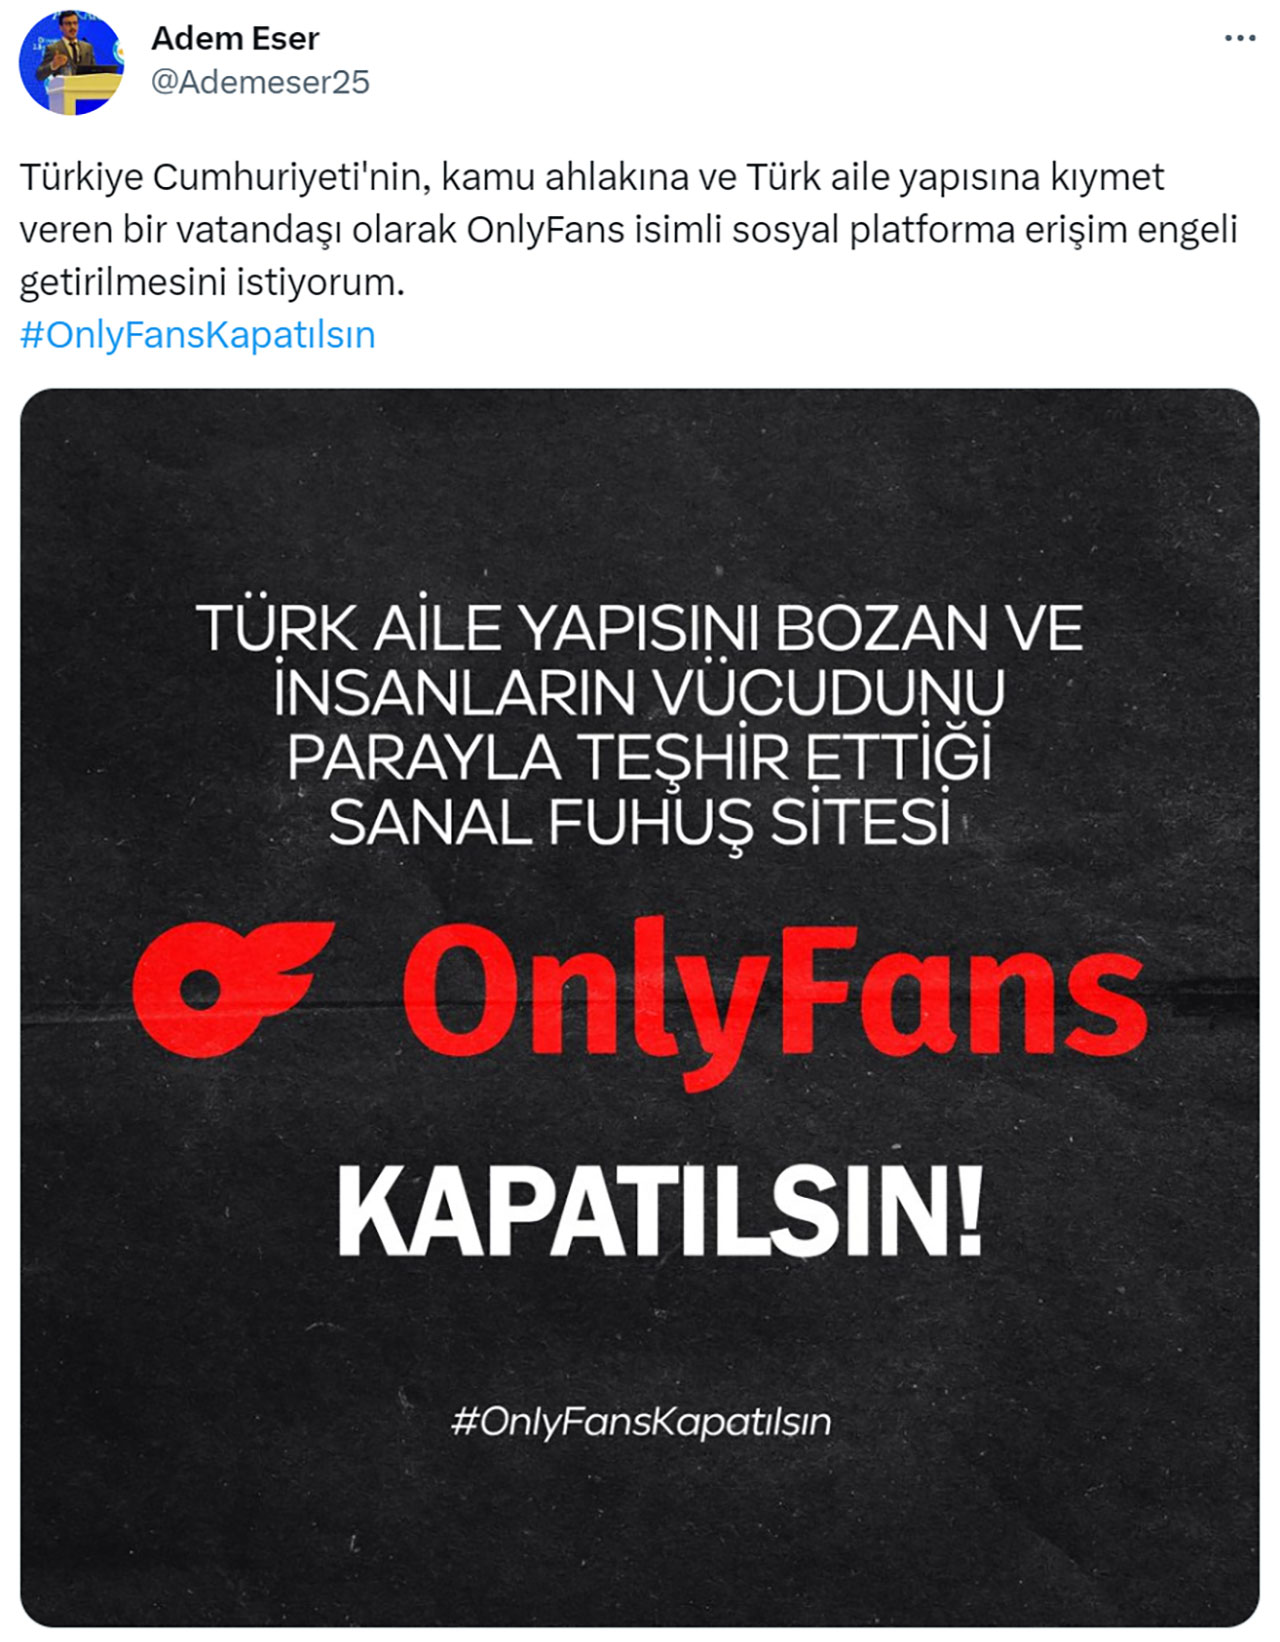 İnanç Can Çekmez: Twitter'da OnlyFans'ın Kapanması İçin "Kampanya" Başlatıldı - Webtekno 13